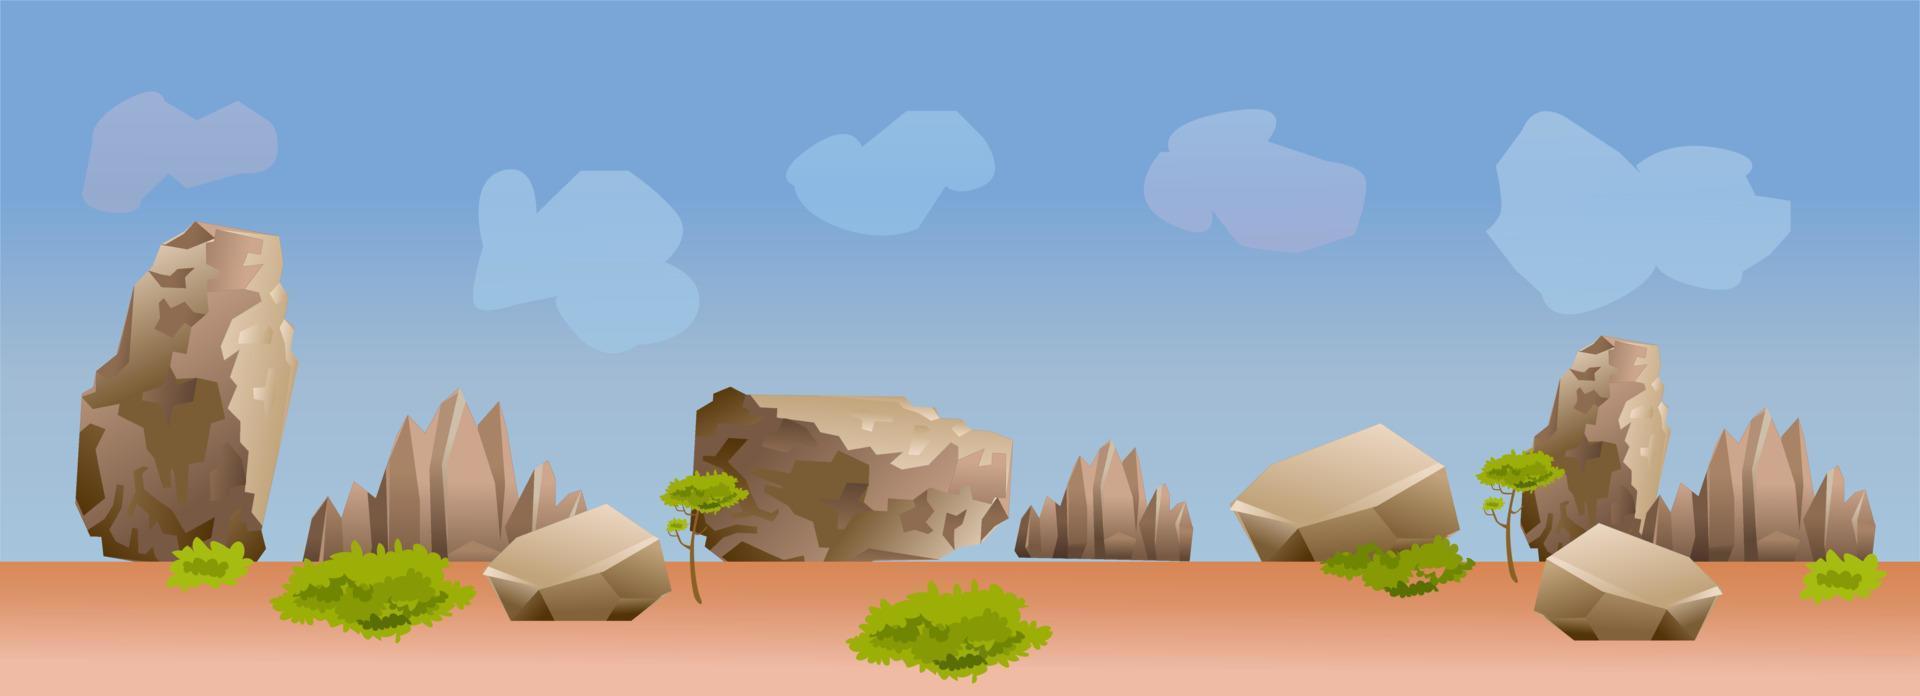 Hintergrund des Wüstenspiels vektor